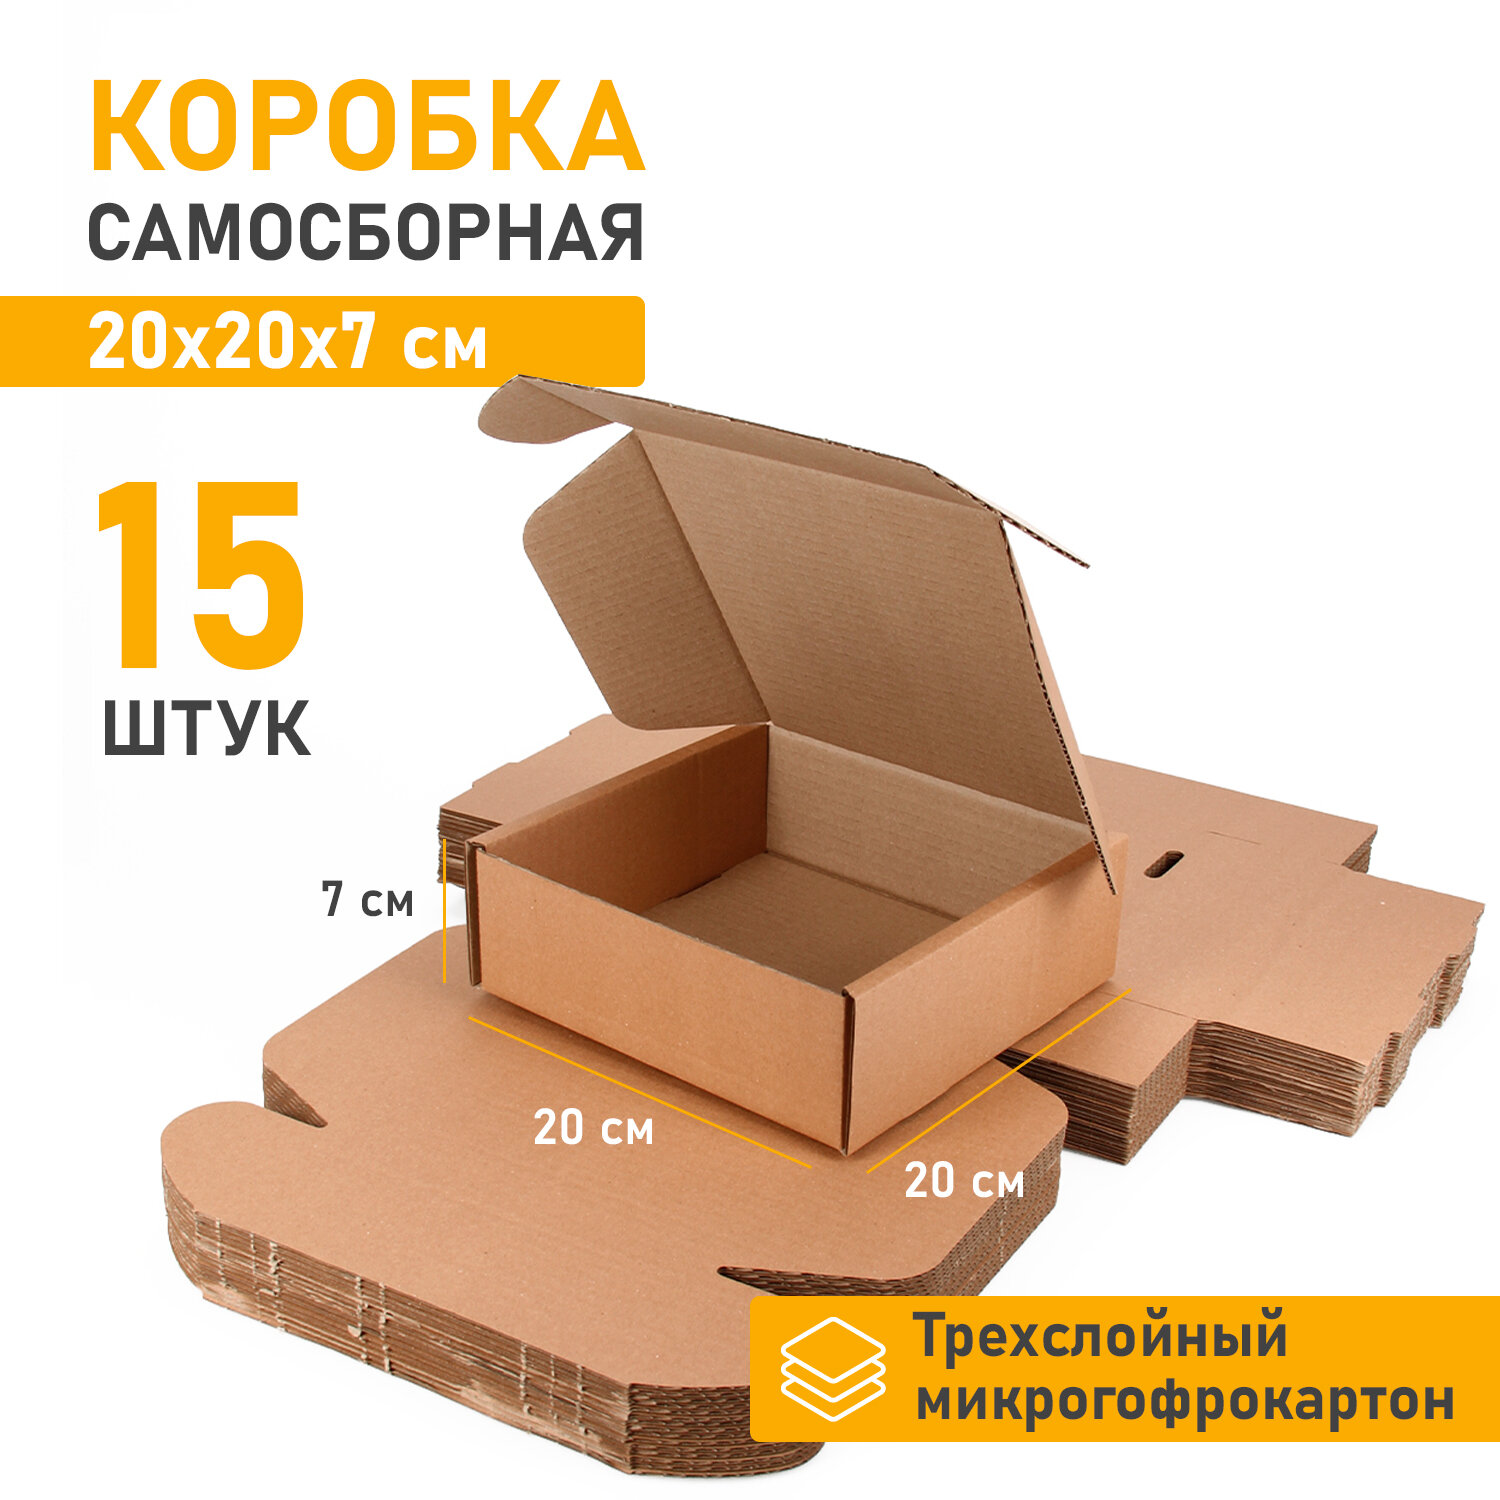 Самосборная картонная коробка 20*20 см - 15 штук